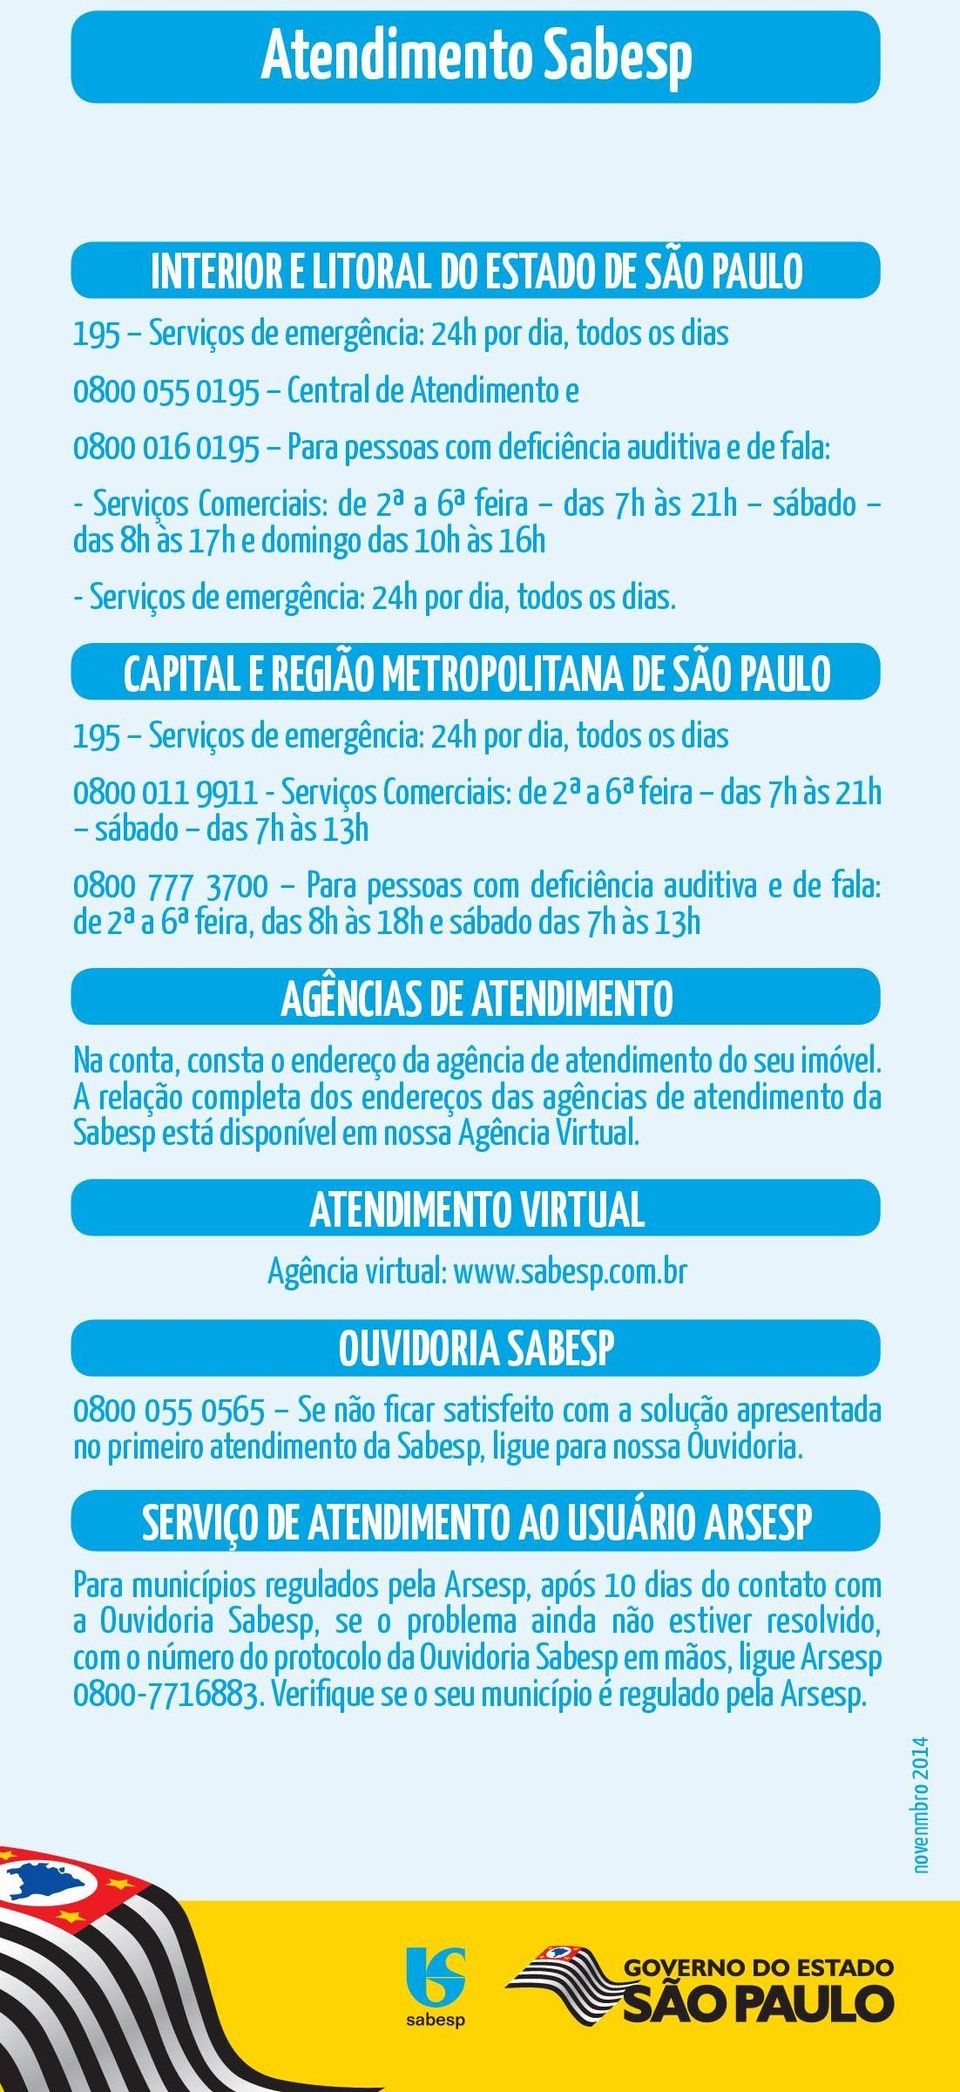 CAPITAL E REGIÃO METROPOLITANA DE SÃO PAULO 195 Serviços de emergência: 24h por dia, todos os dias 0800 011 9911 - Serviços Comerciais: de 2ª a 6ª feira das 7h às 21h sábado das 7h às 13h 0800 777